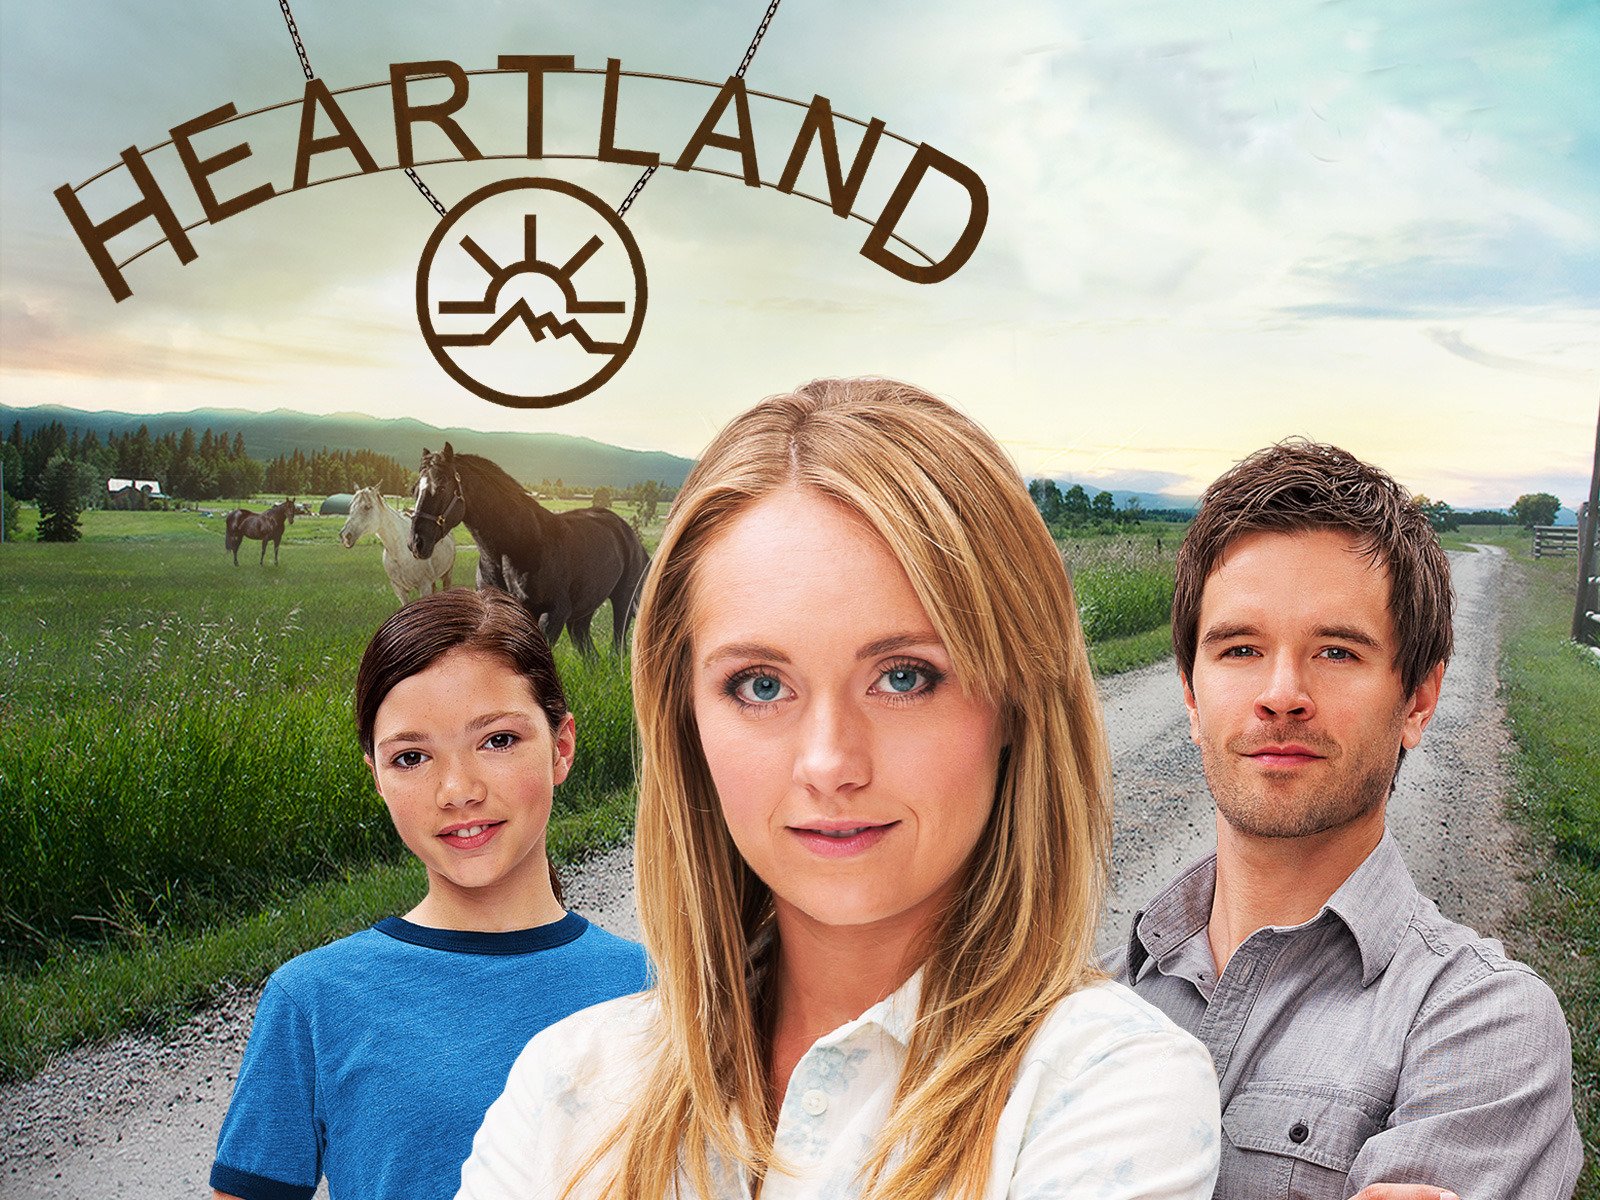 Heartland Season 7 , HD Wallpaper & Backgrounds